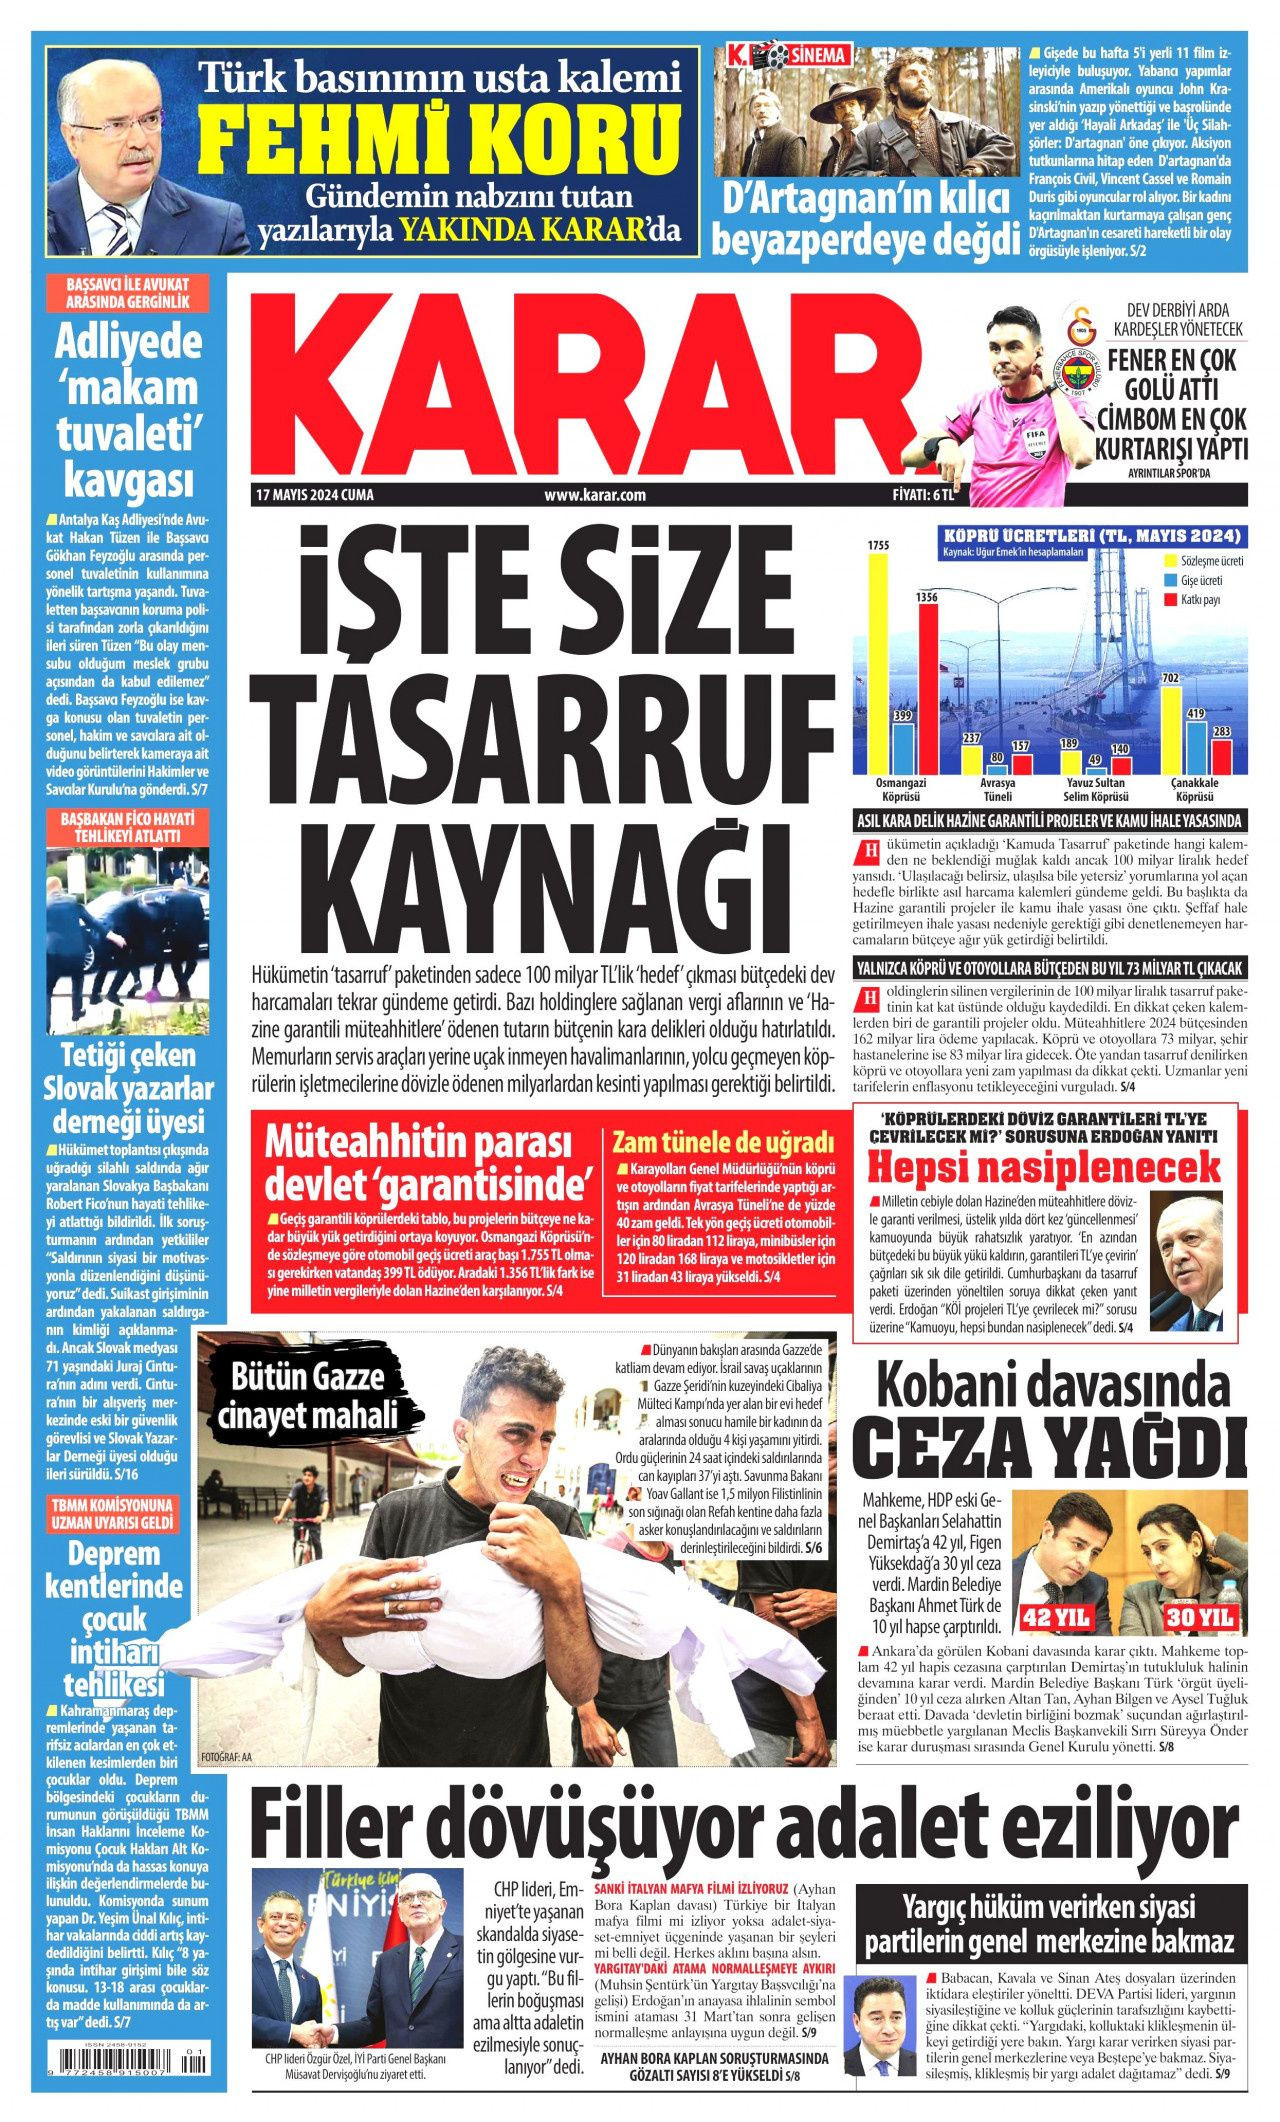 Gazeteler Kobanê davası kararlarını nasıl ve nereden gördü? - Sayfa 4